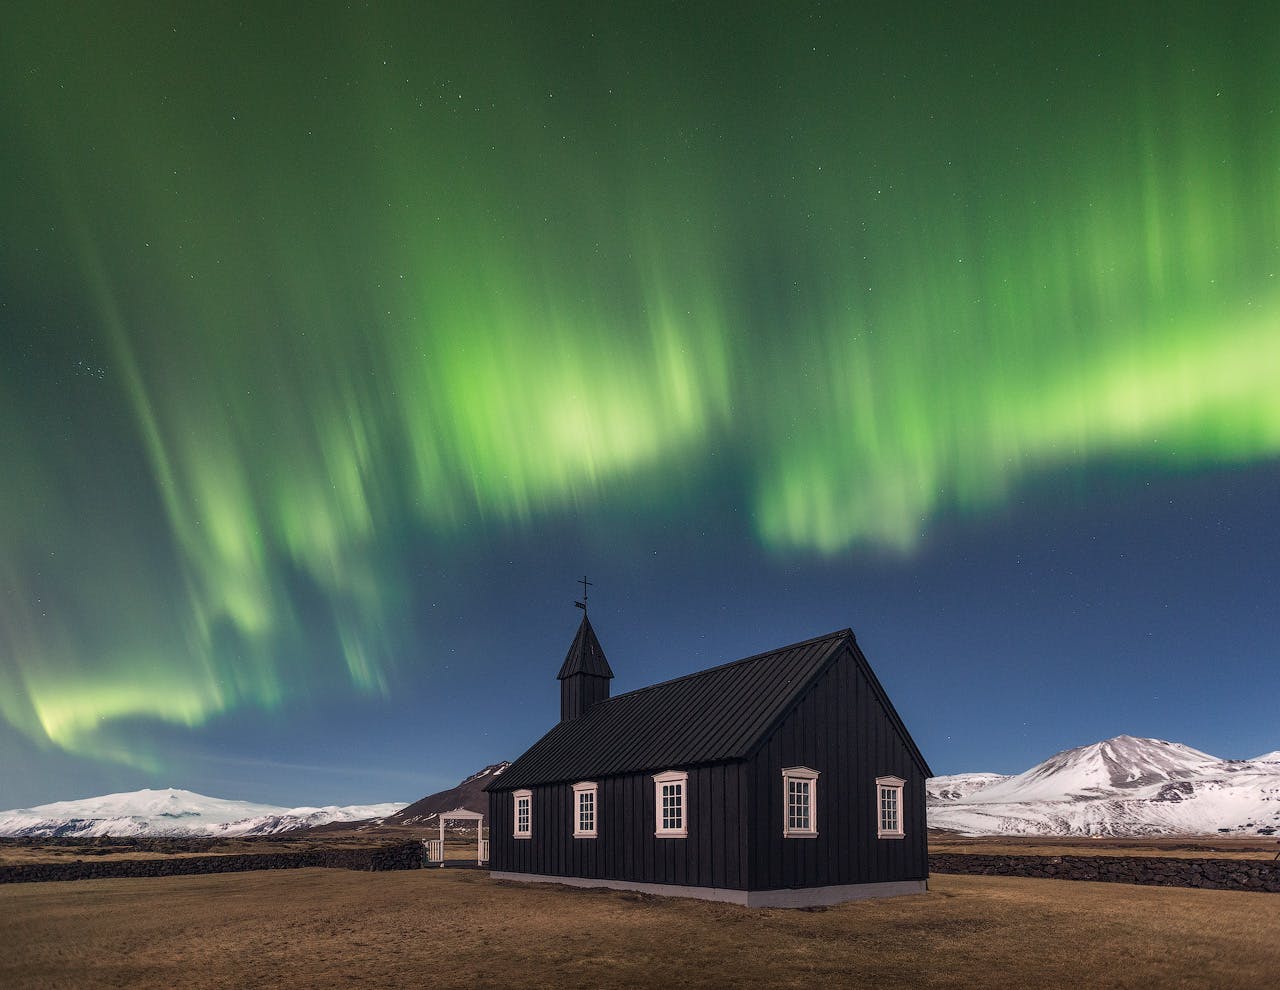 ระหว่างช่วงเดือนใบไม้ร่วงในประเทศไอซ์แลนด์ เป็นไปได้ที่จะได้เห็นแสงเหนือเช่นเดียวกับในรูป ที่กำลังเต้นรำอย่างมีชีวิตชีวาอยู่ด้านหลังของโบสถ์ปูดิร์.